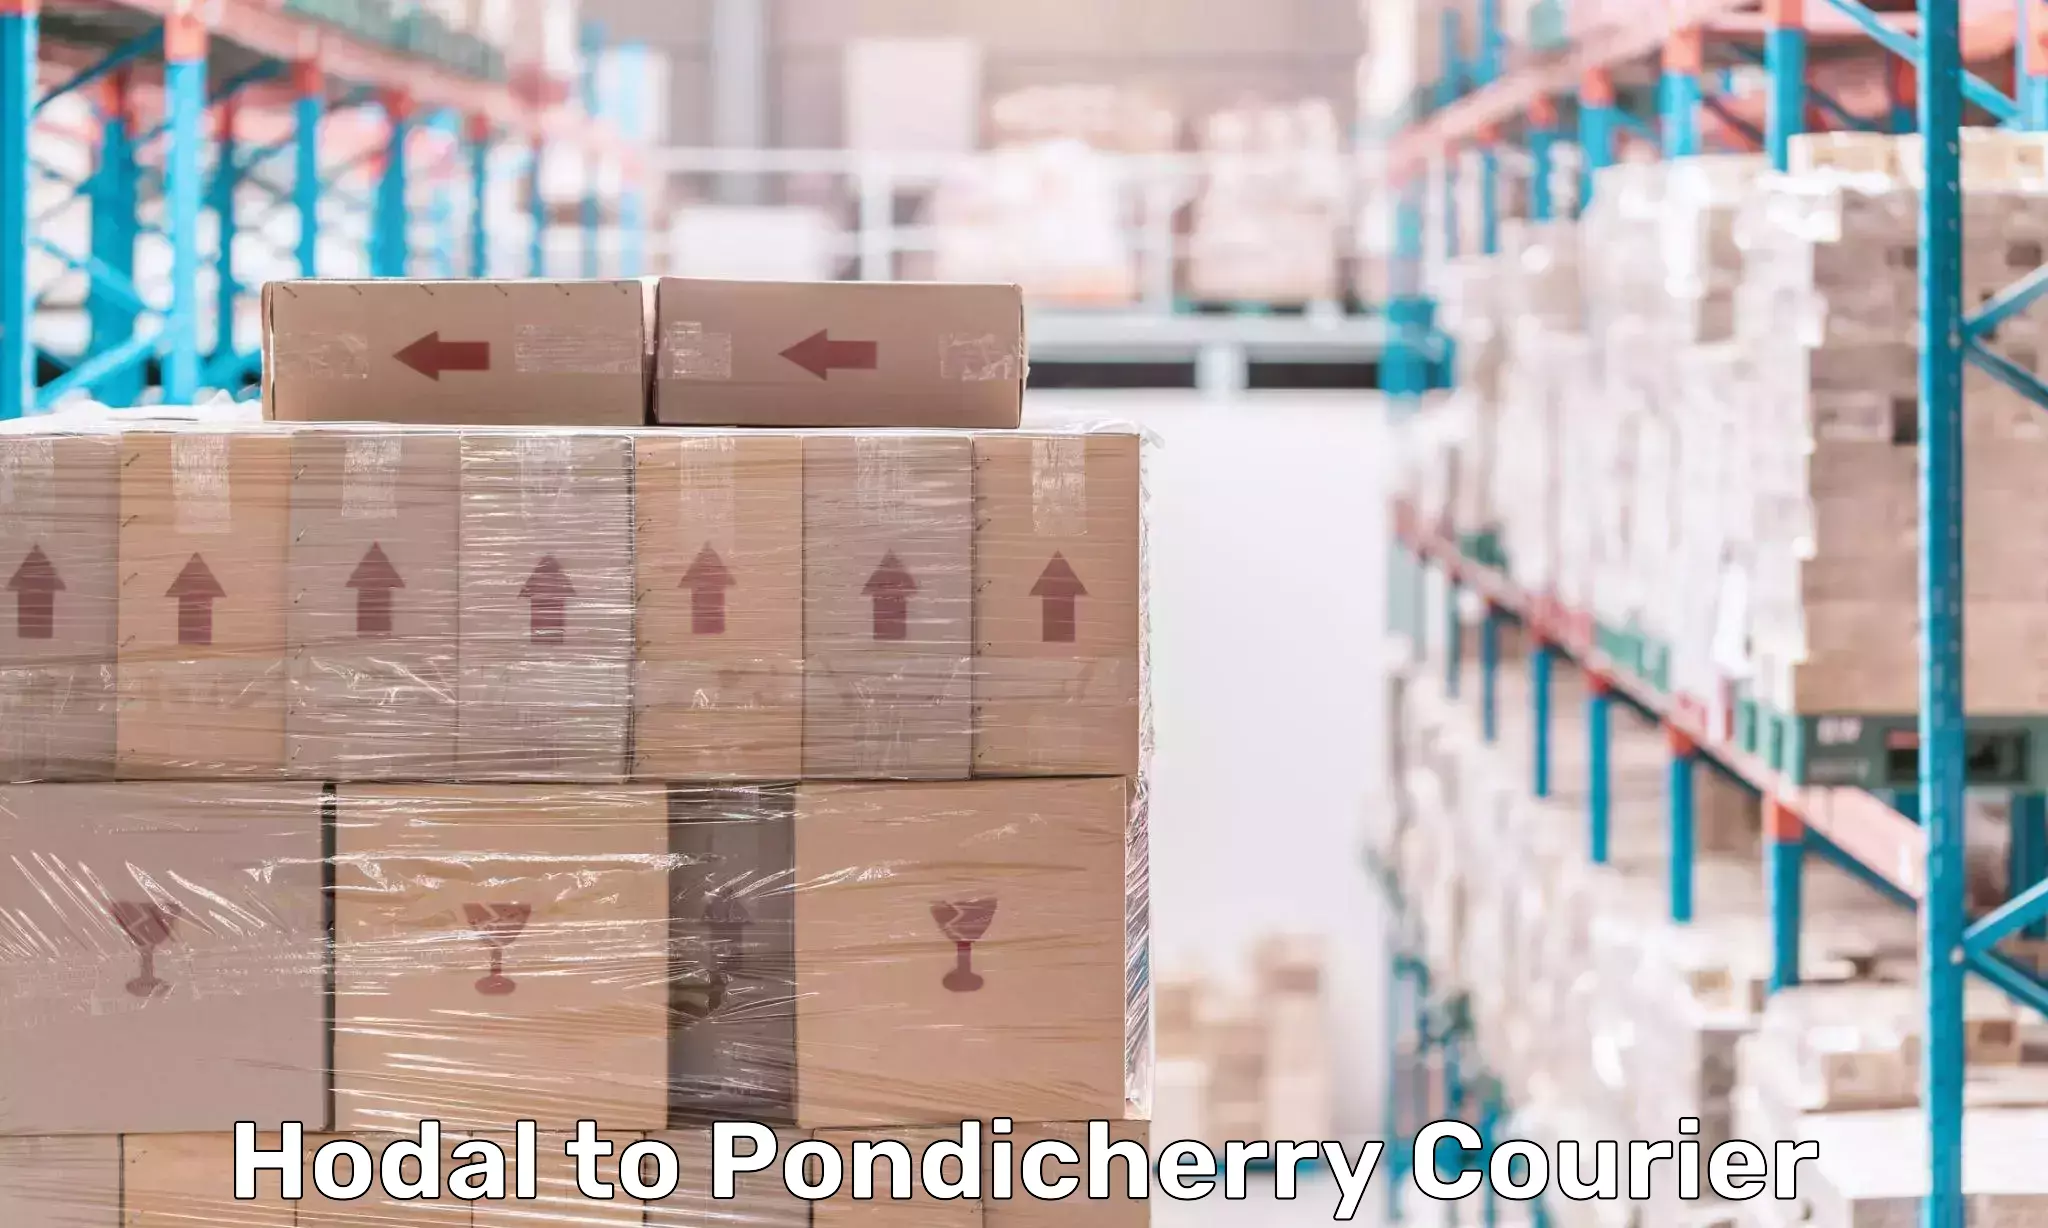 Efficient parcel service Hodal to Pondicherry